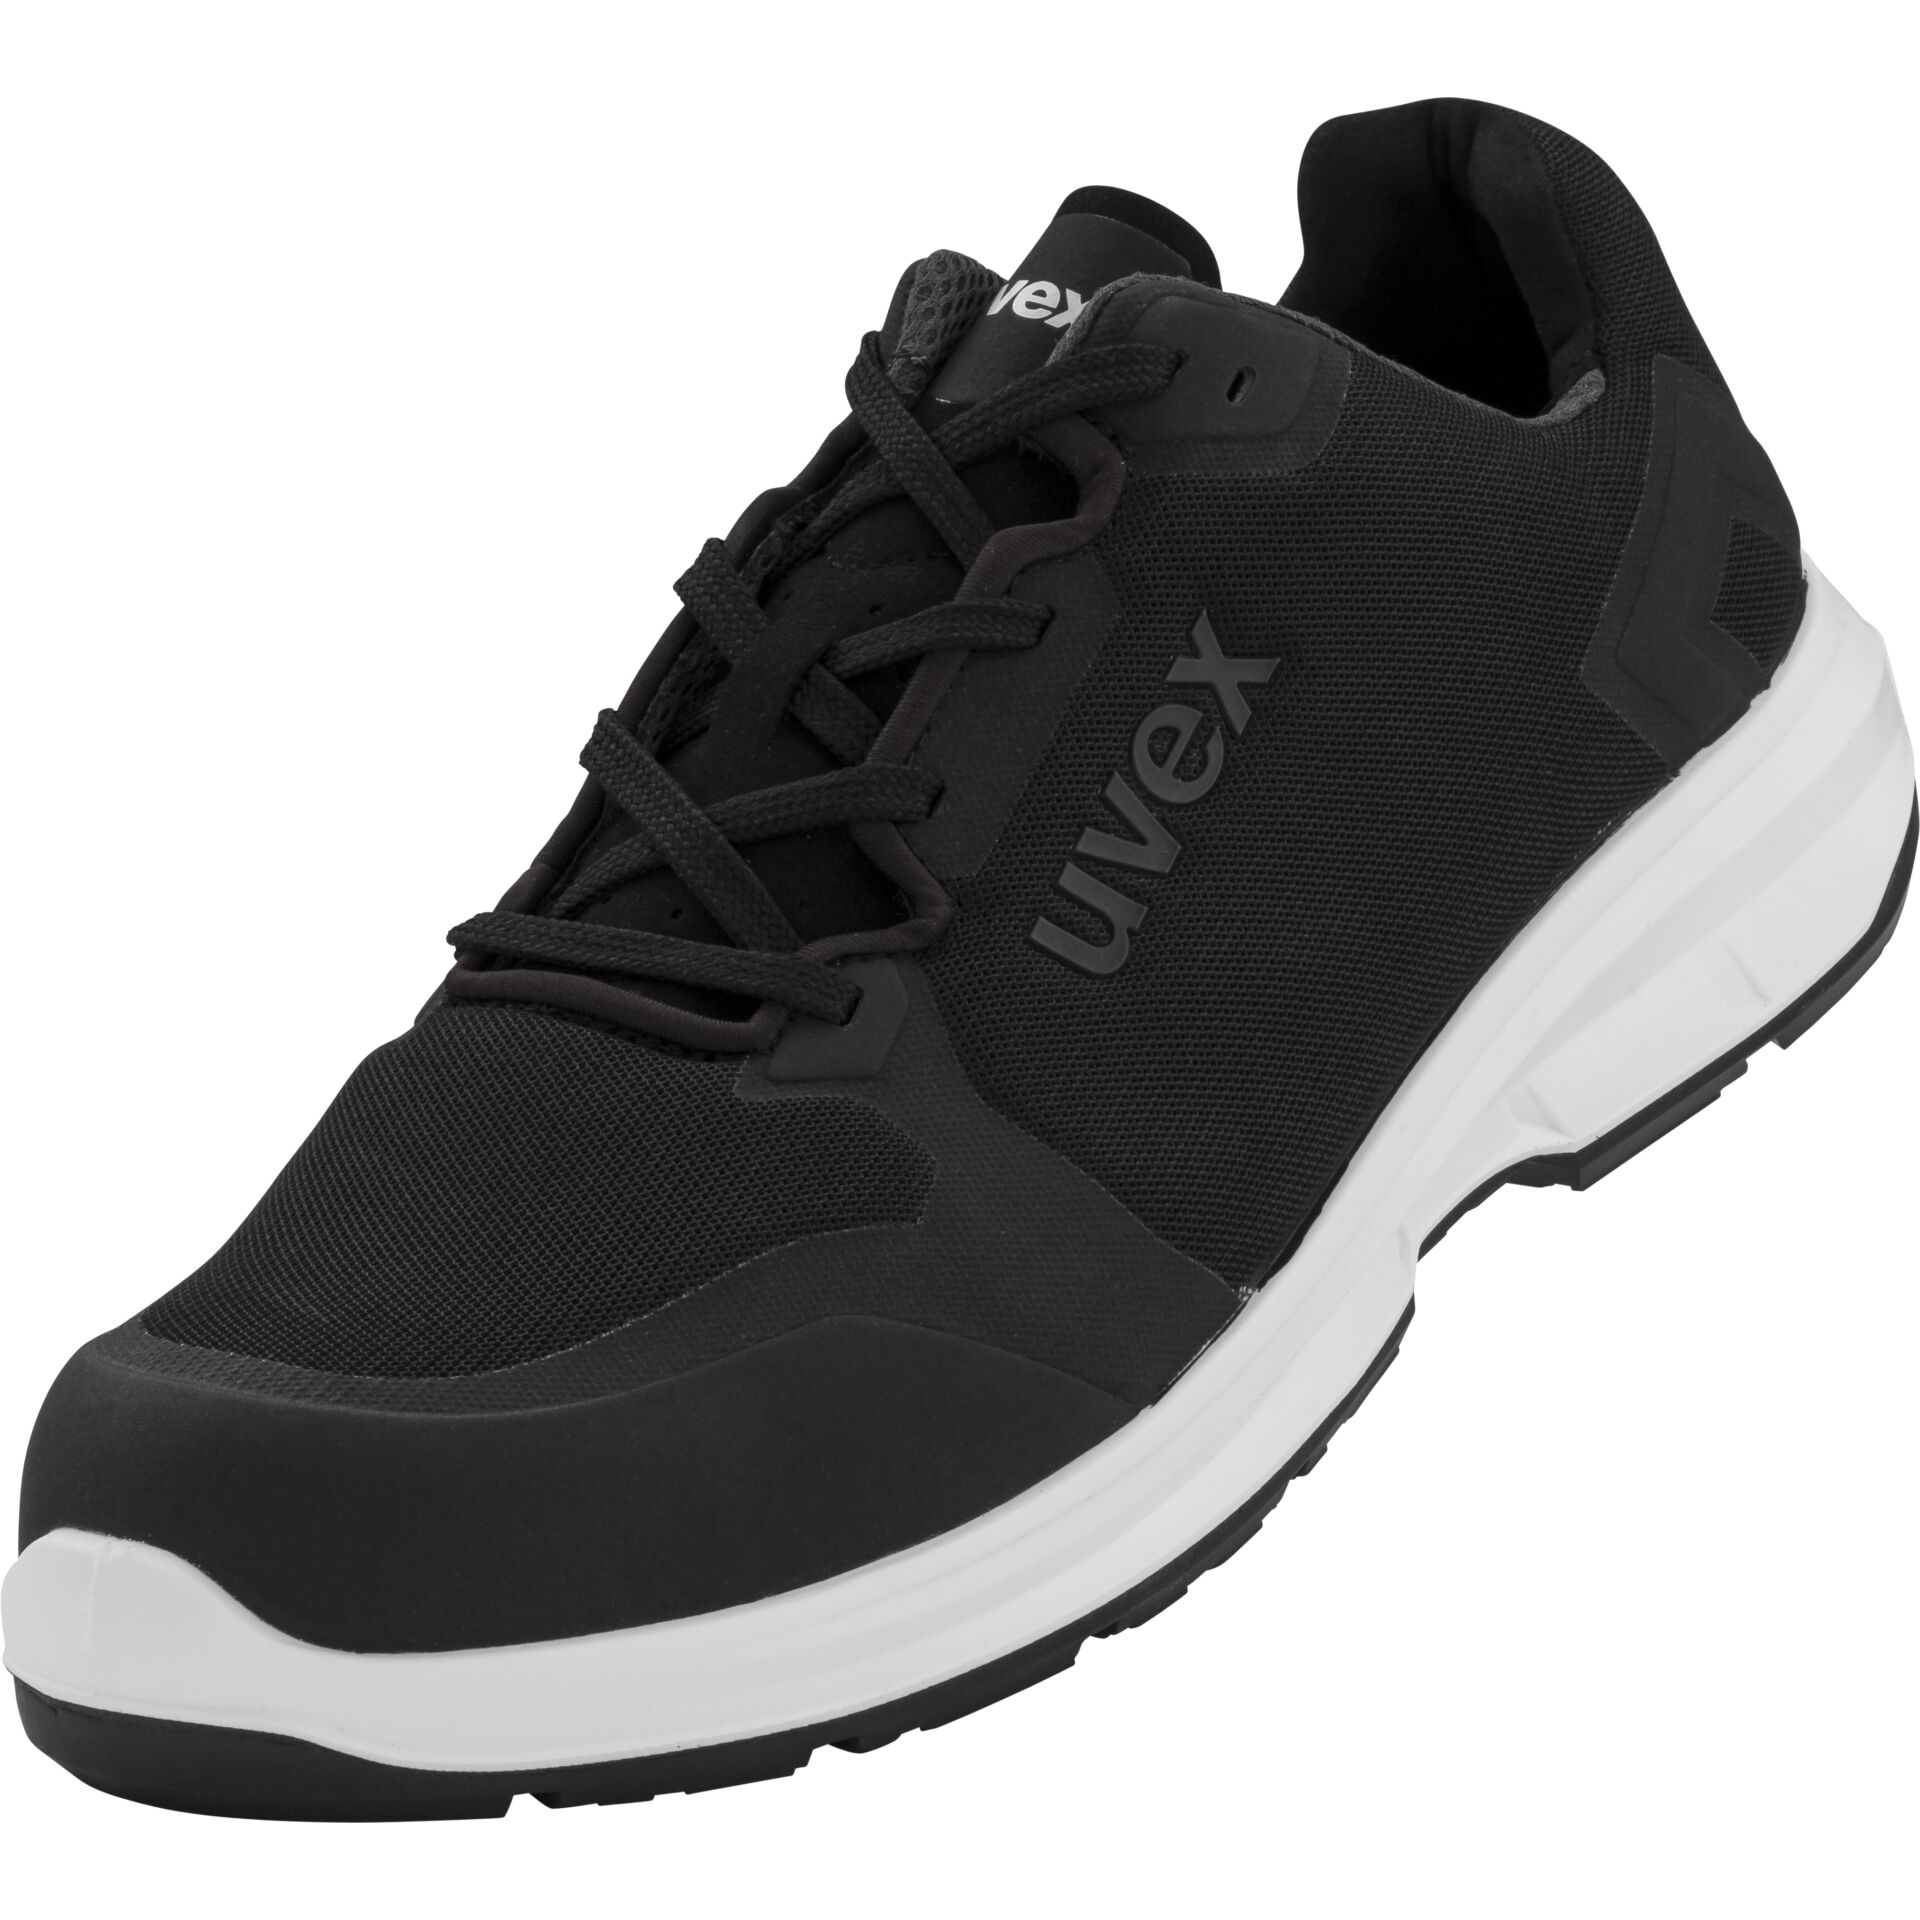 uvex 1 sport S1 p SRC  shoe black, size 48